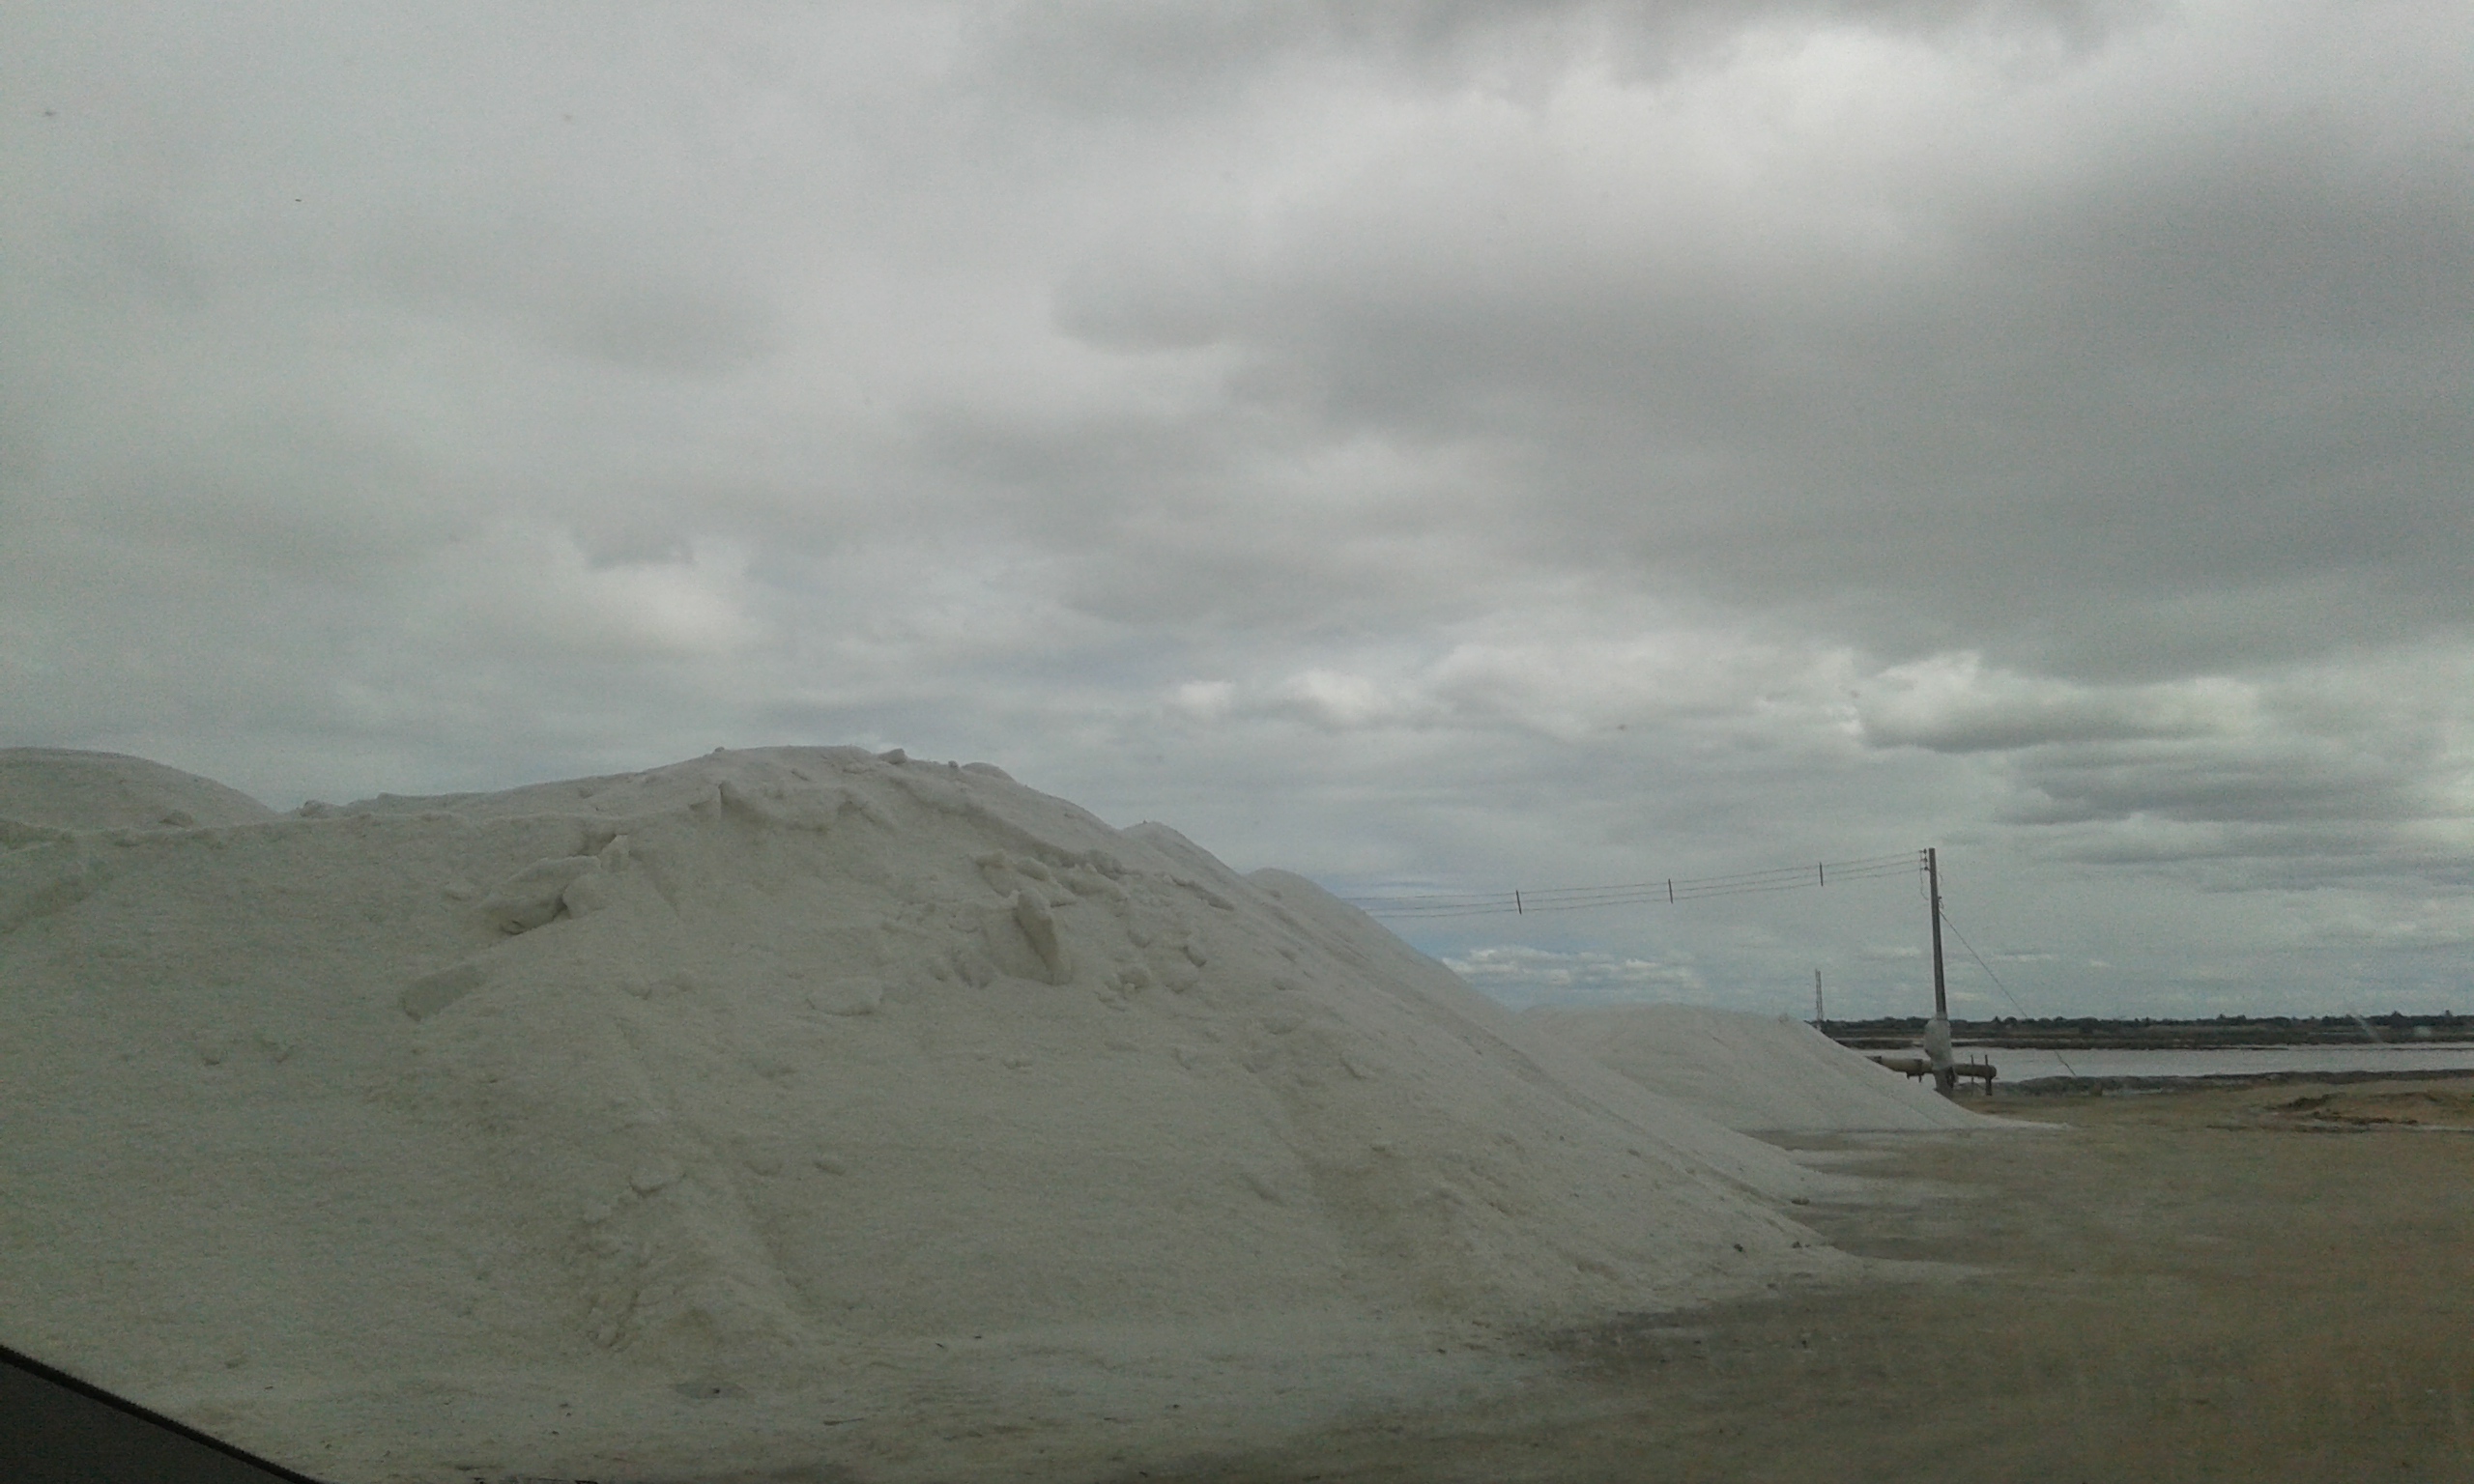 L'extraction du sel dans la ville Areia Branca, état du Rio Grande do Norte. Pour ça, le nom Côté Blanche. (Crédit photo: Fabio Santana)